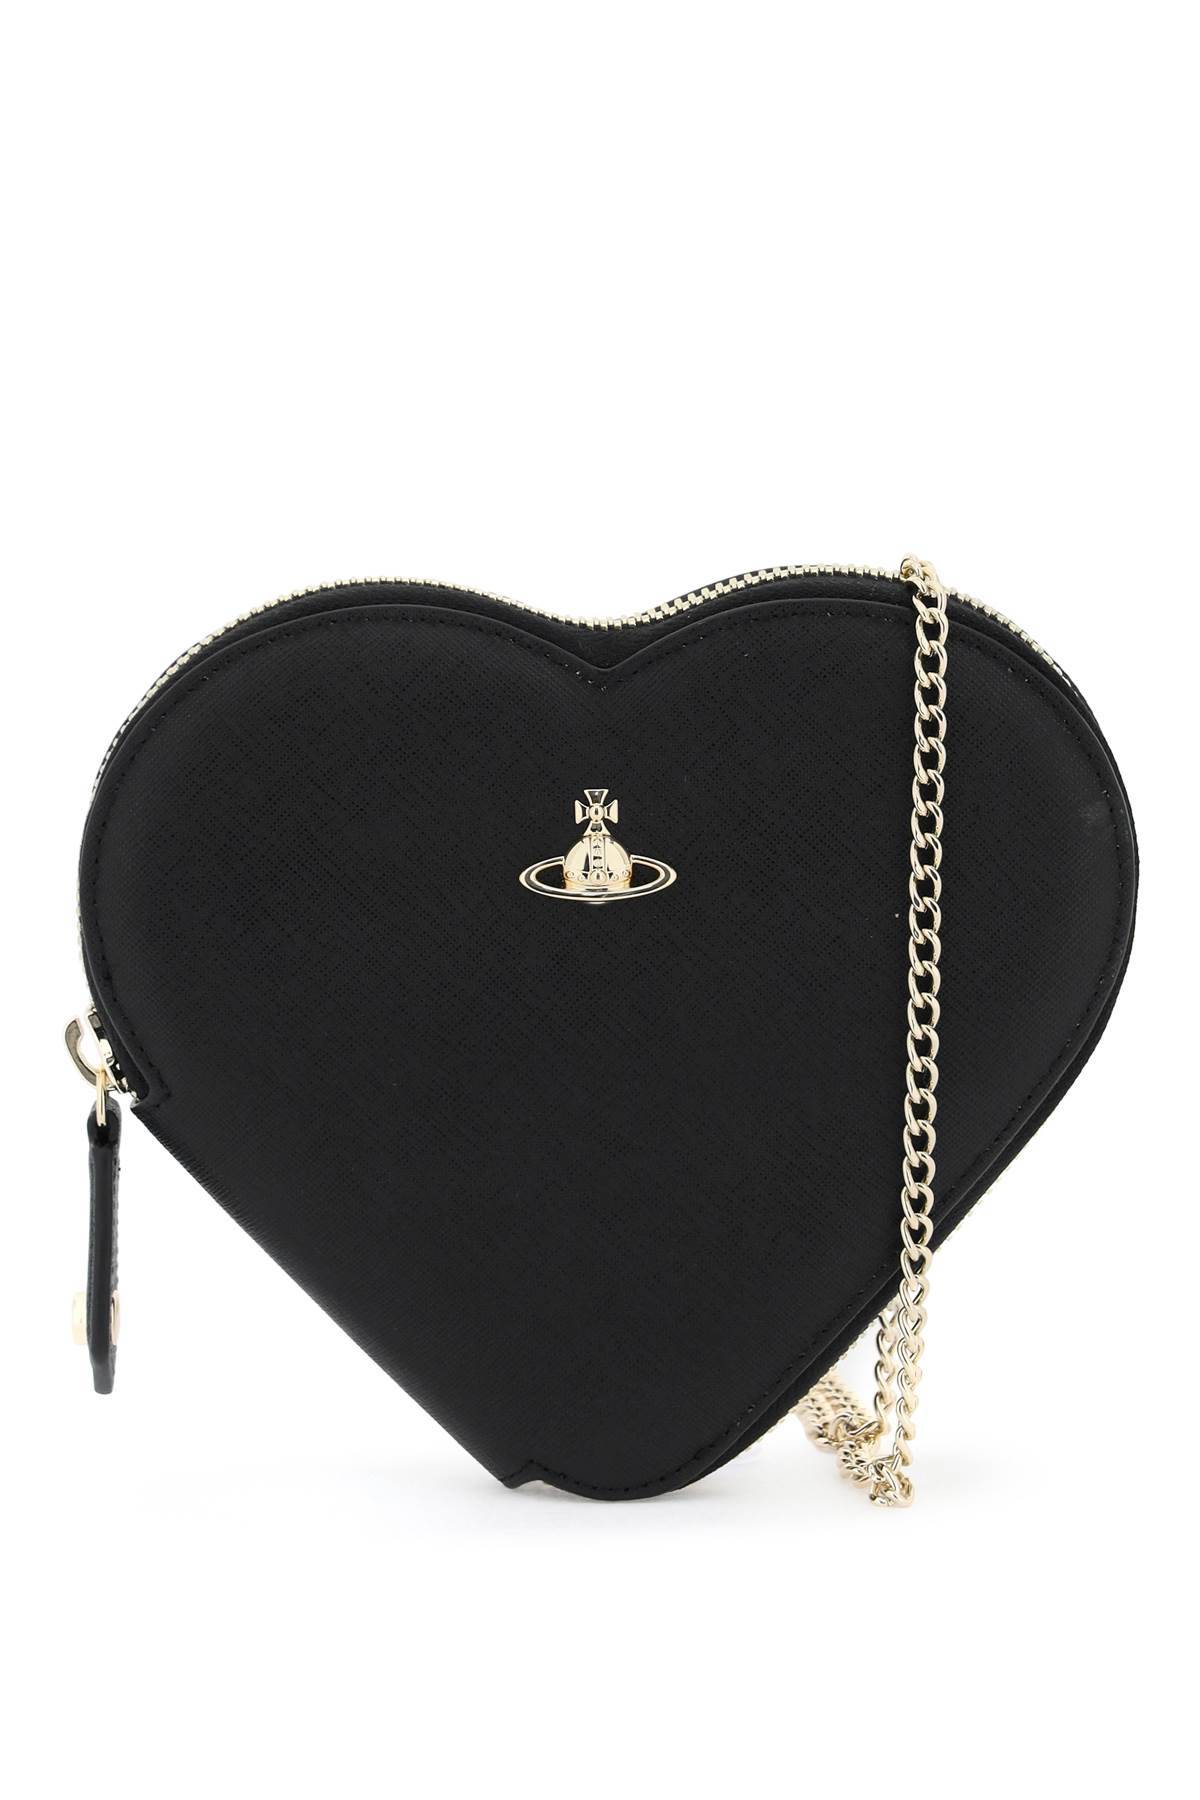 Vivienne Westwood VIVIENNE WESTWOOD heart-shaped crossbody bag